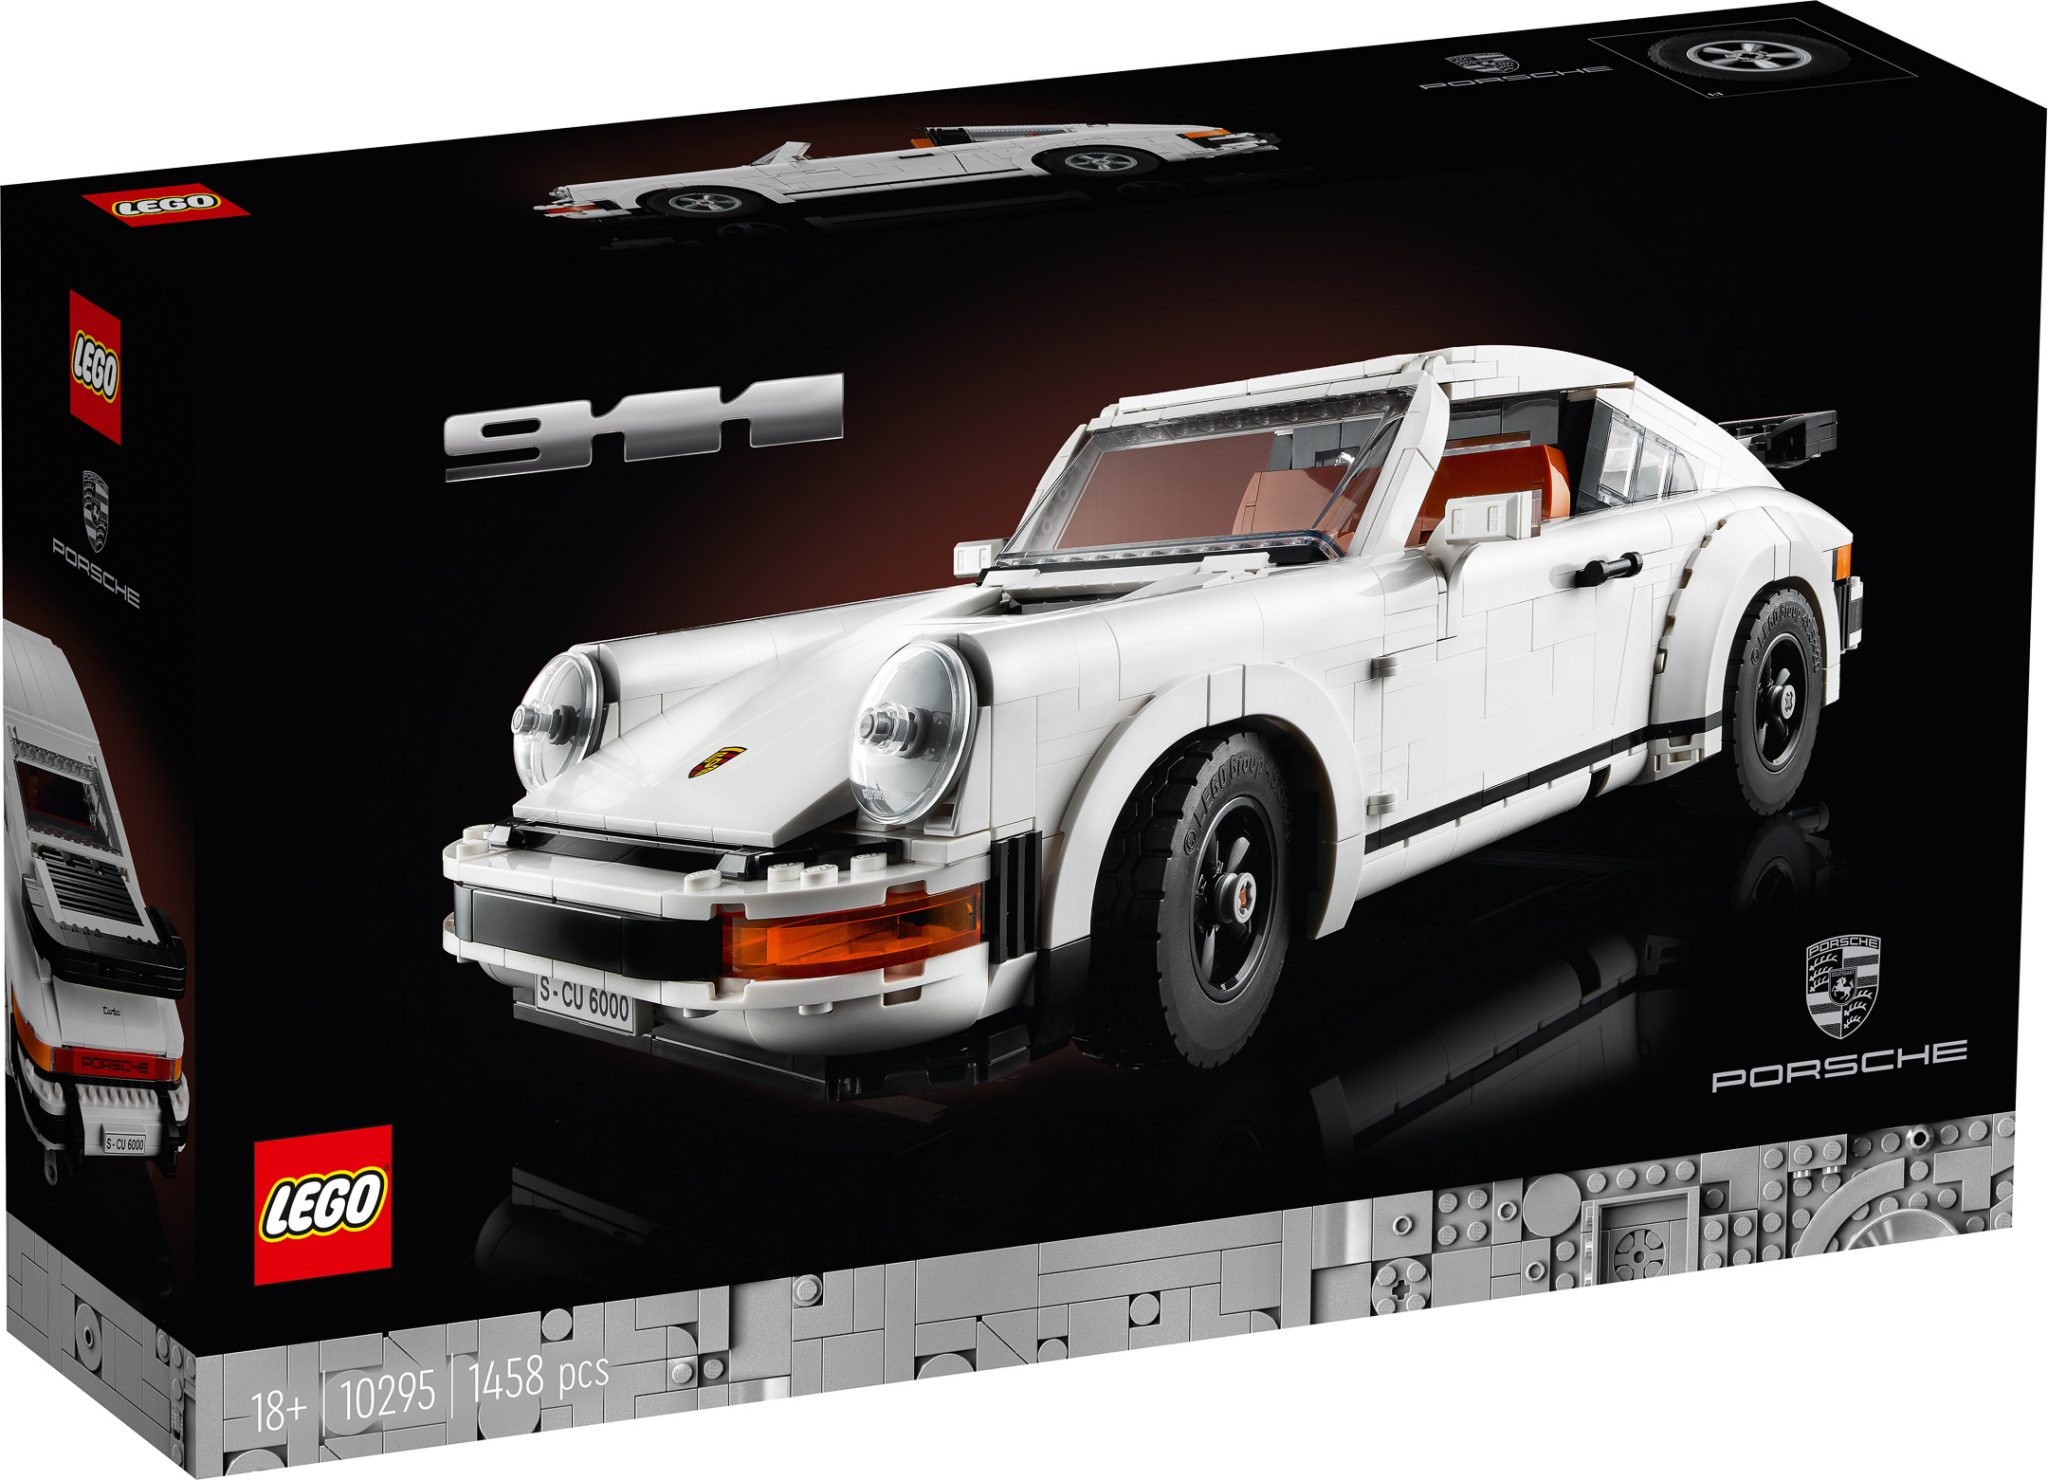 LEGO kondigt Porsche 911 aan in de Creator Expert-reeks